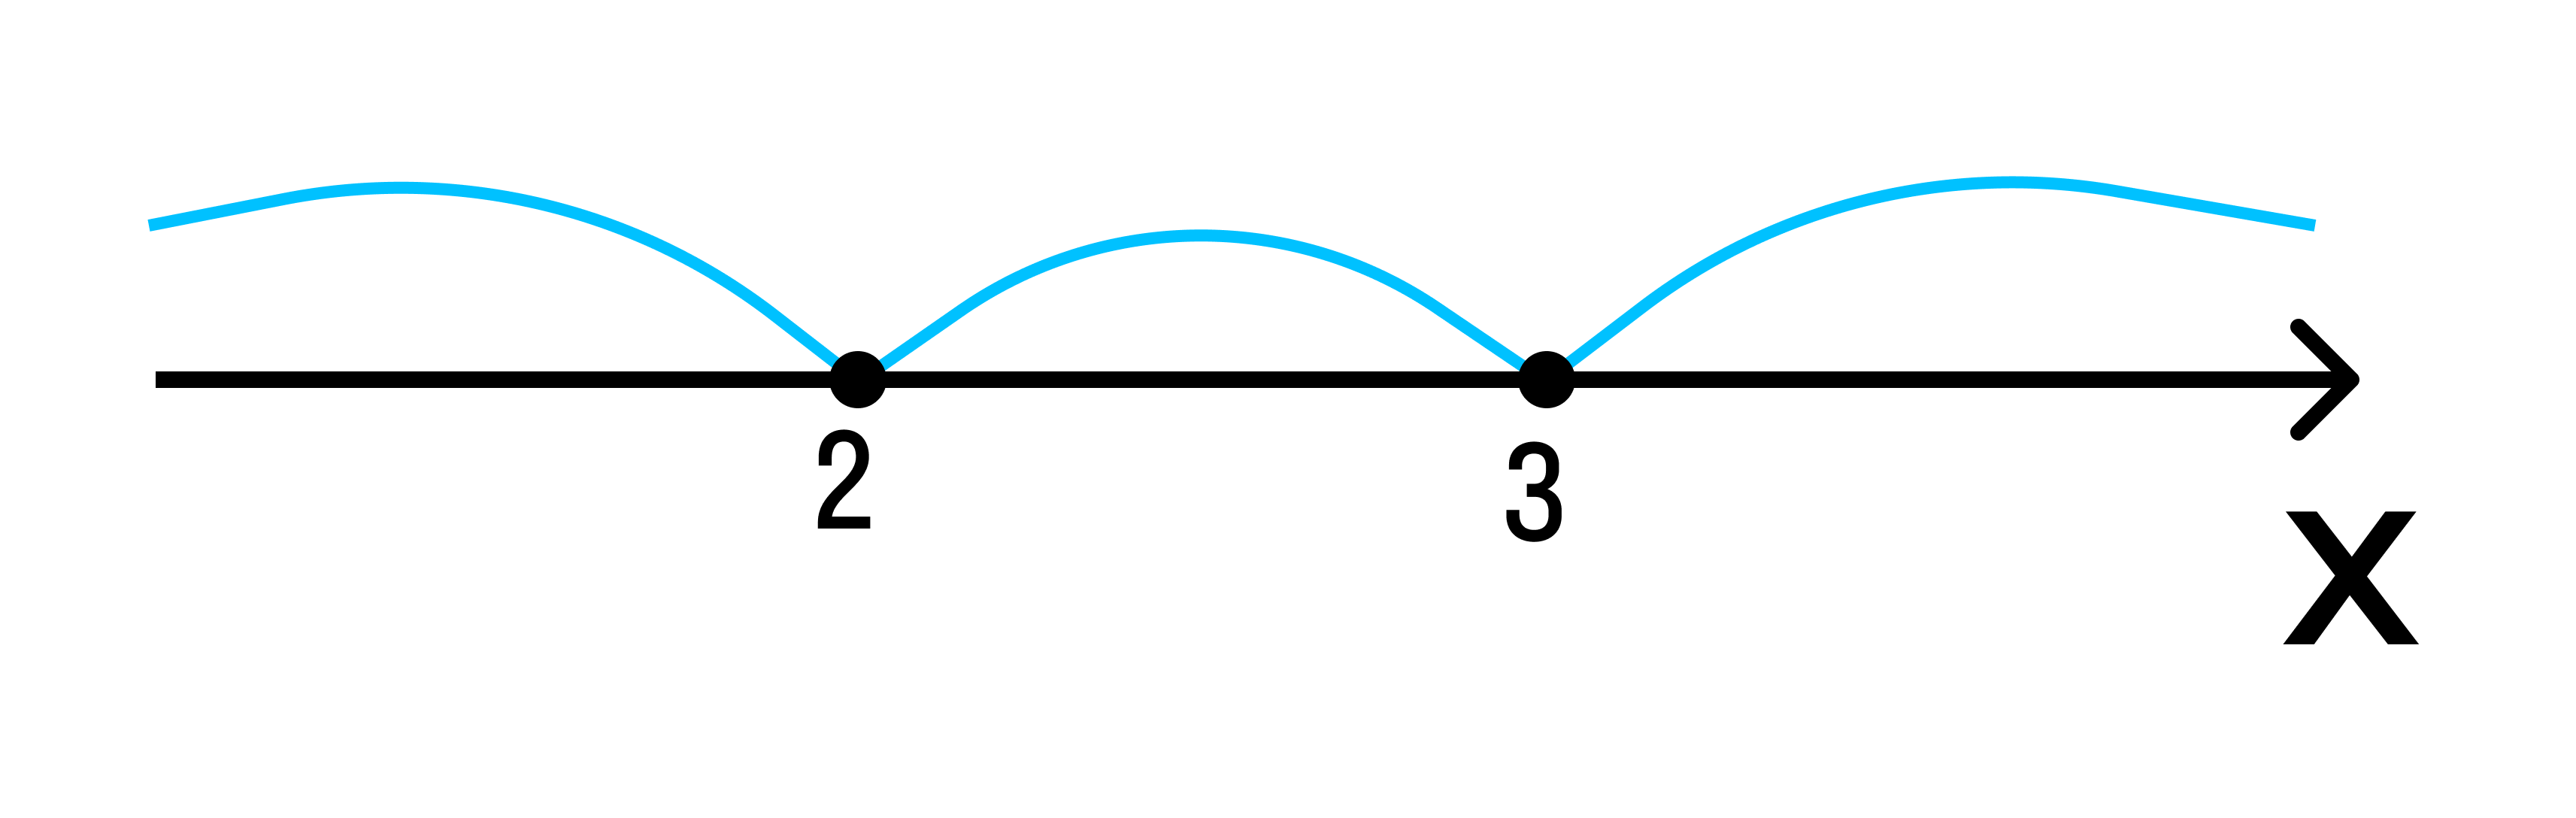 Решение систем линейных уравнений методом интервалов